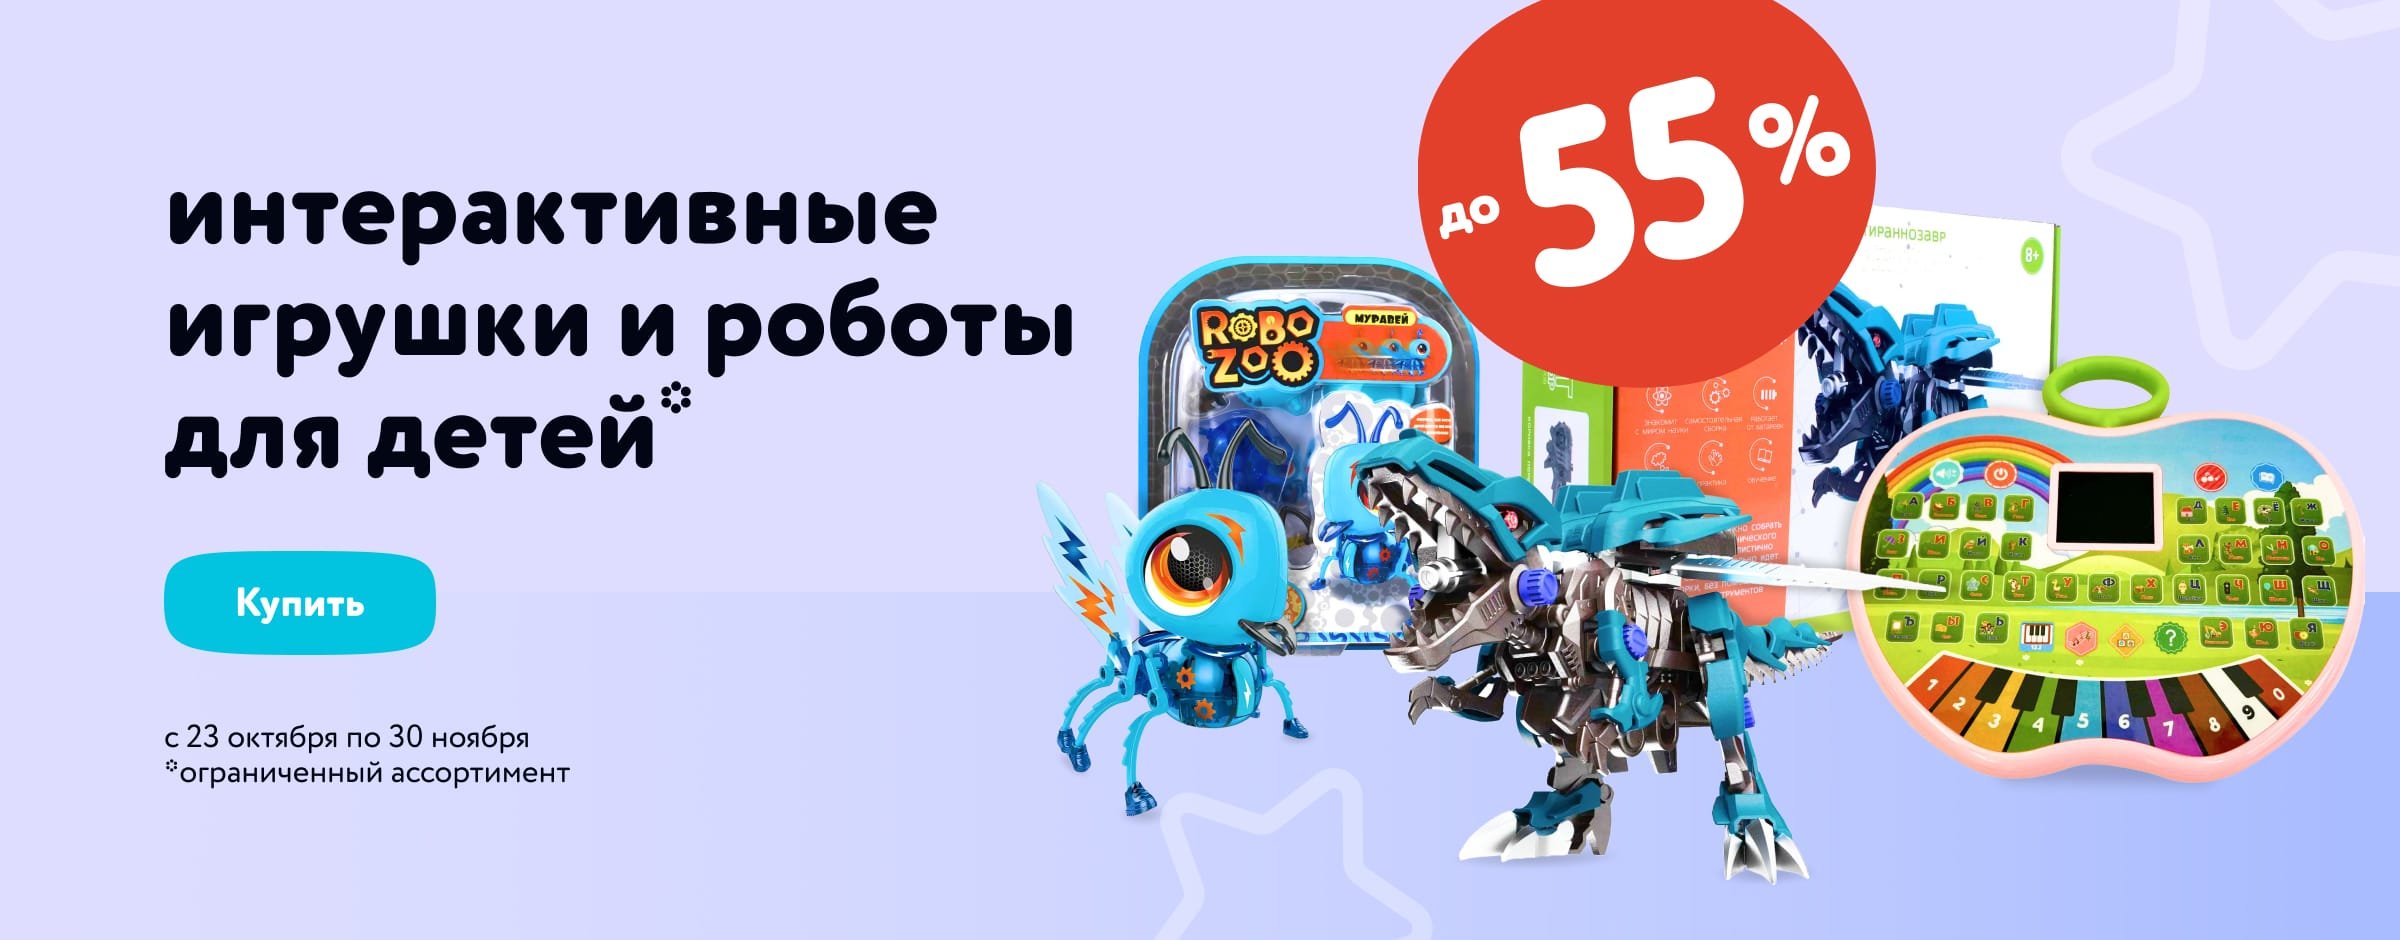 Роботы и интерактивные игрушки для детей со скидками до 55%_карусель_категории